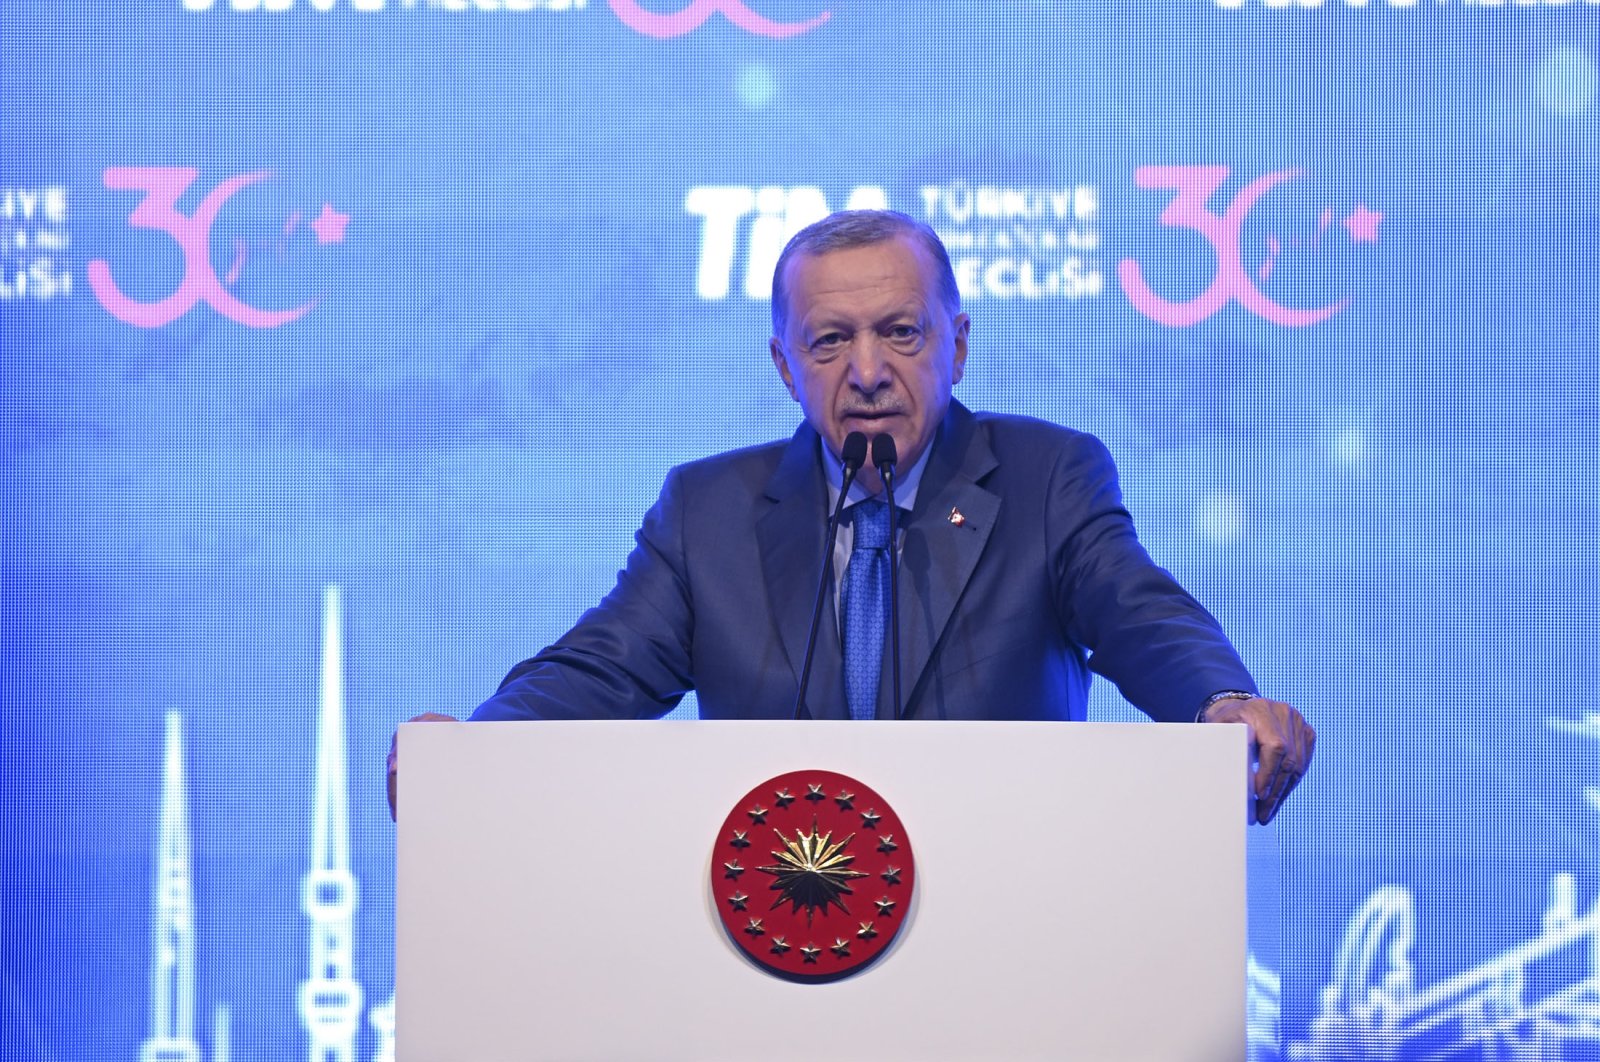 Presiden Erdoğan bersumpah untuk mengurangi inflasi menjadi satu digit